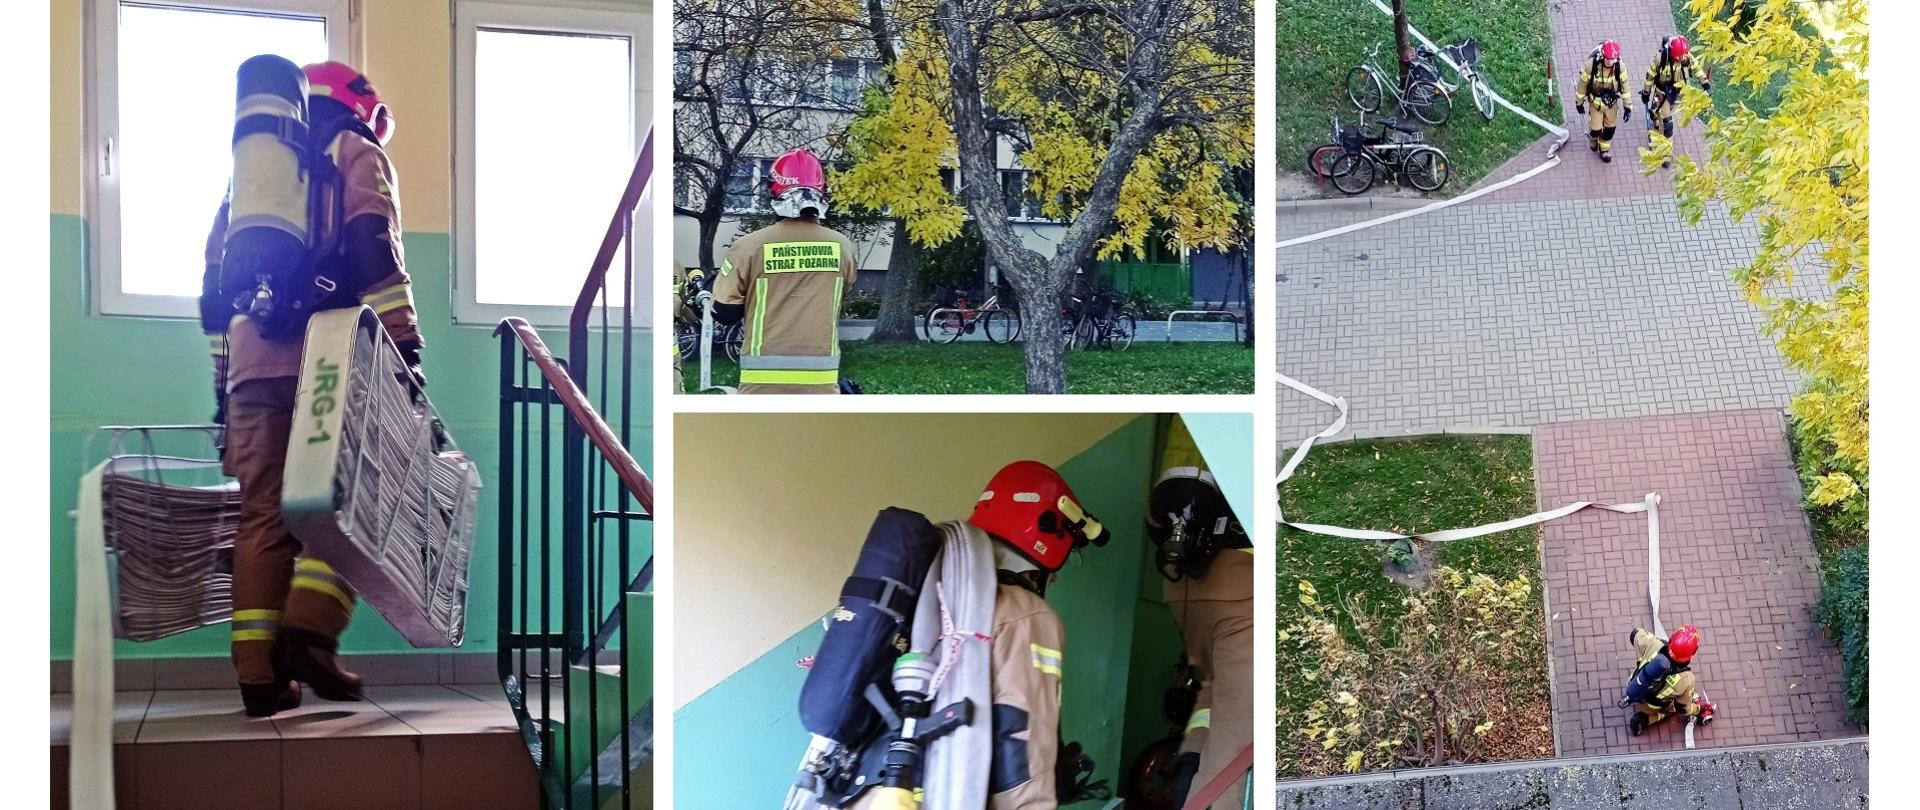 Ćwiczenia z zakresu taktyki działań ratowniczo-gaśniczych podczas pożarów w budynkach wysokich zamieszkania zbiorowego.